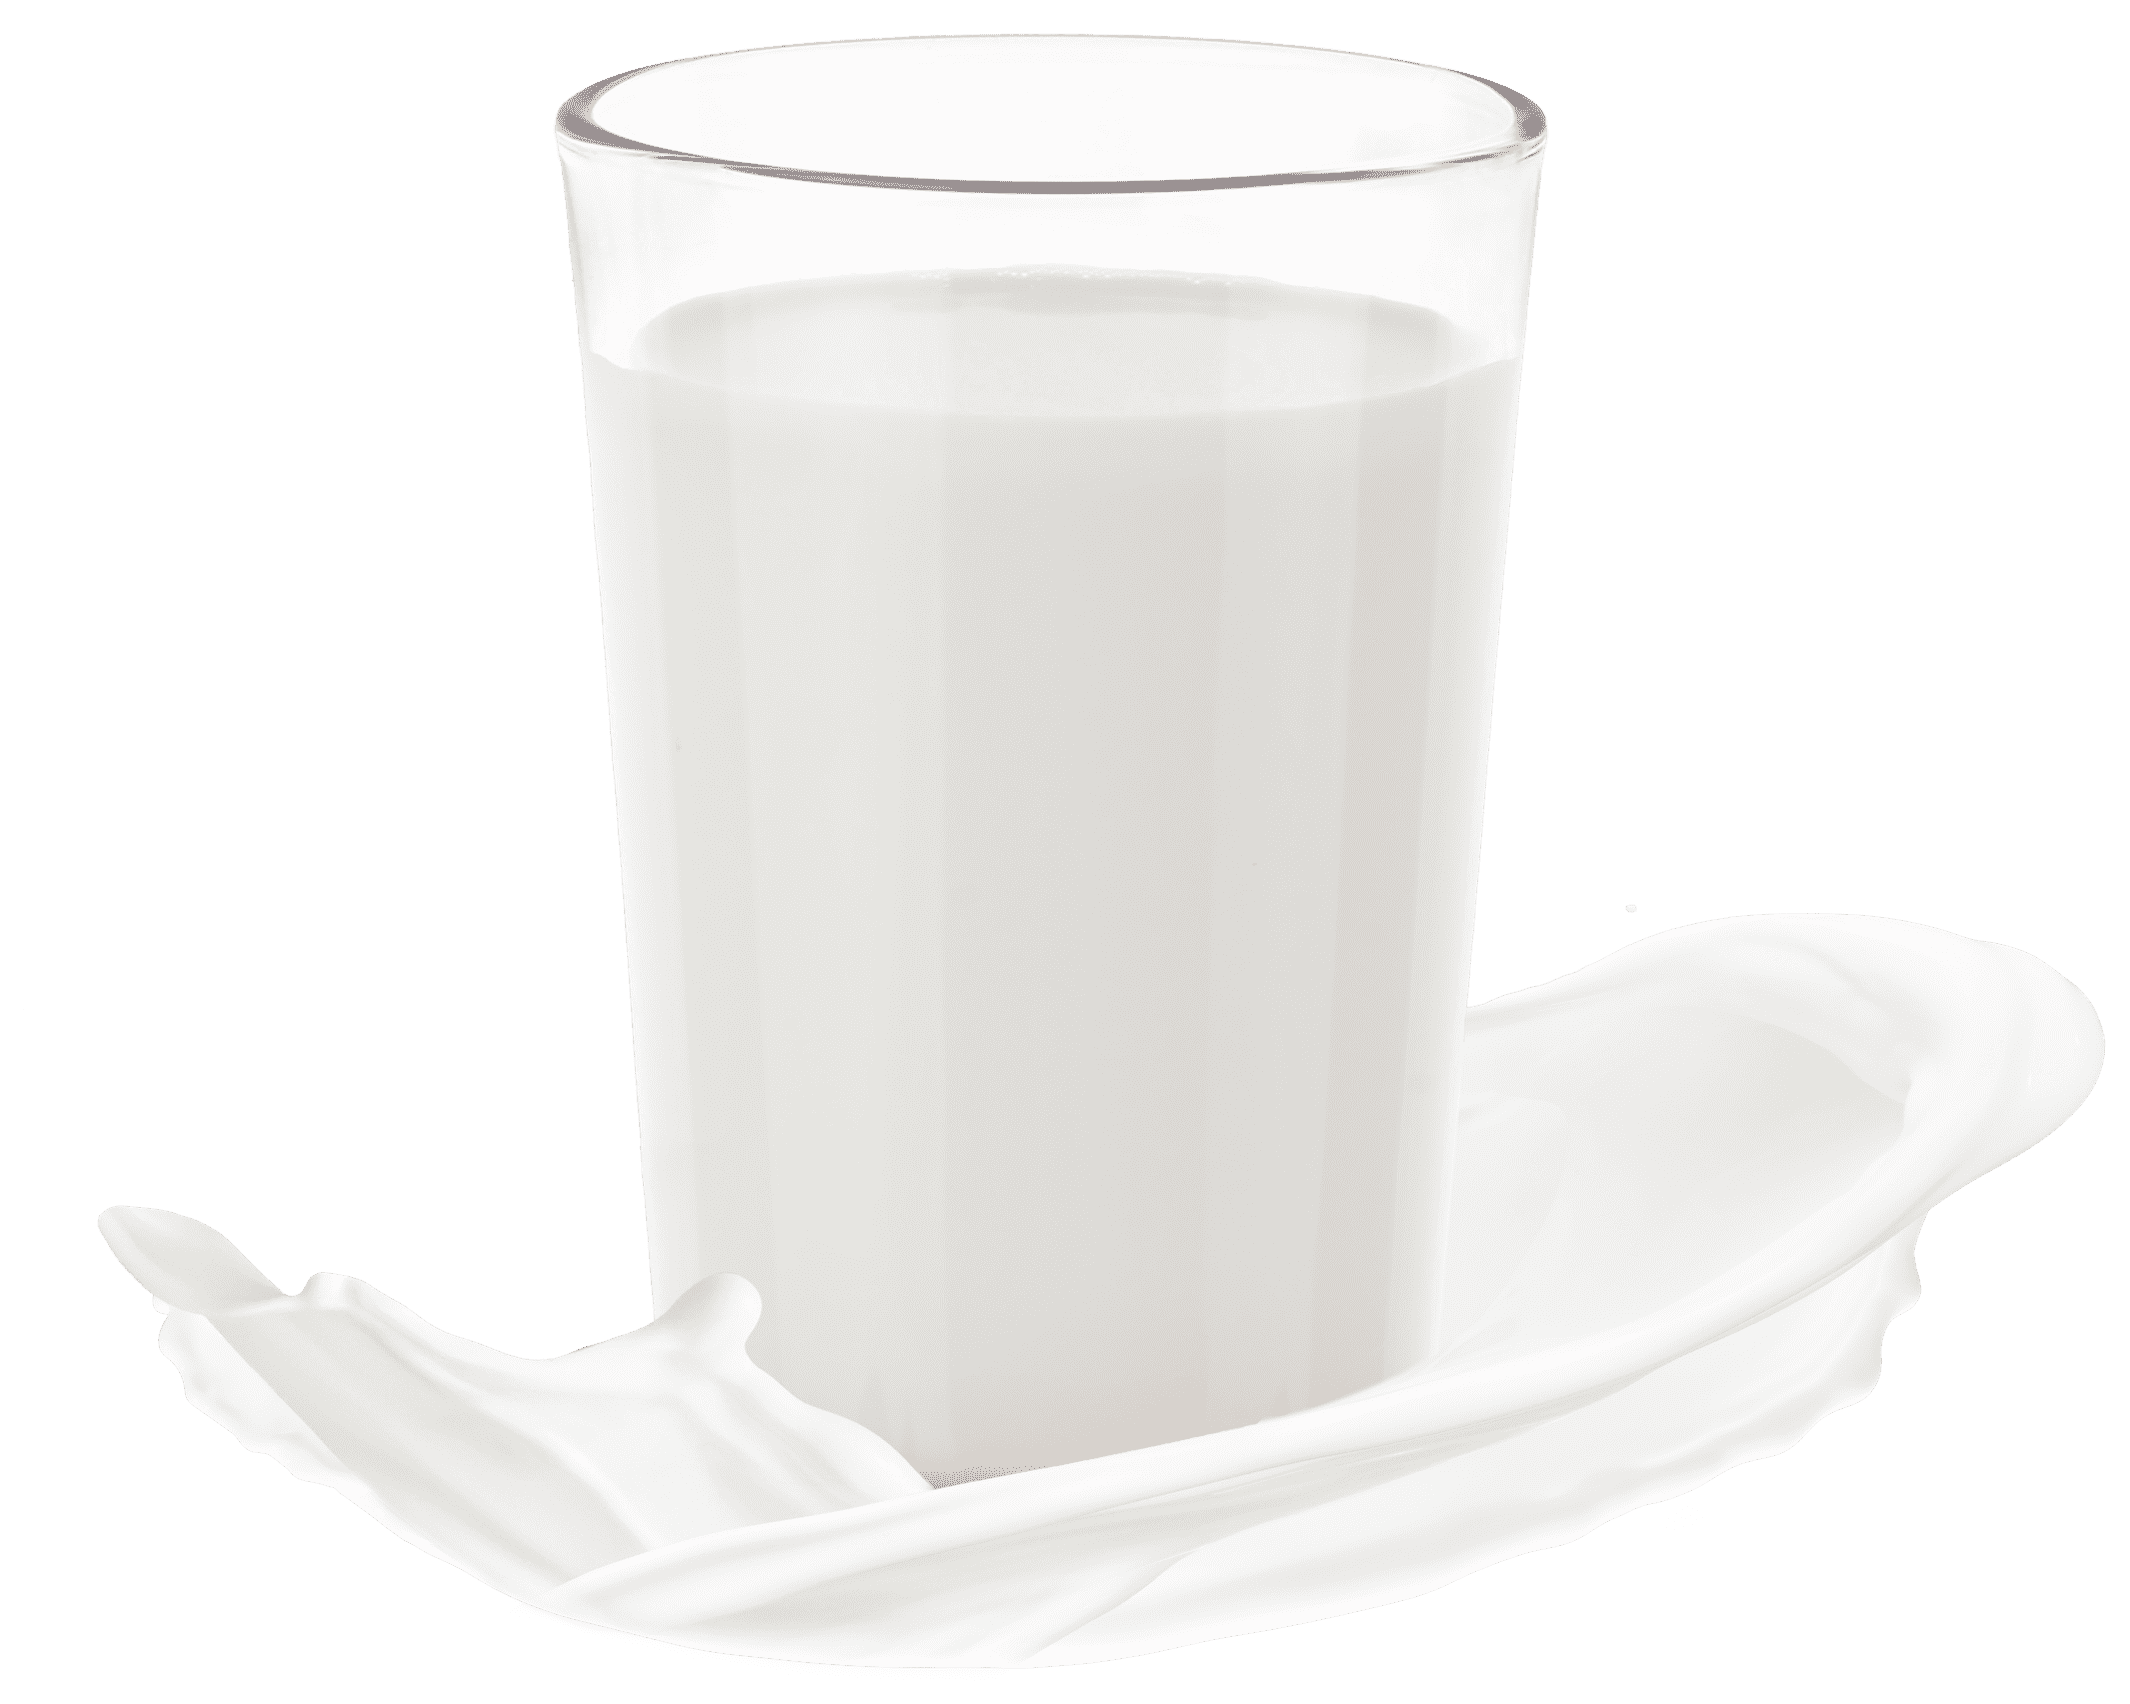 Glass of skim milk